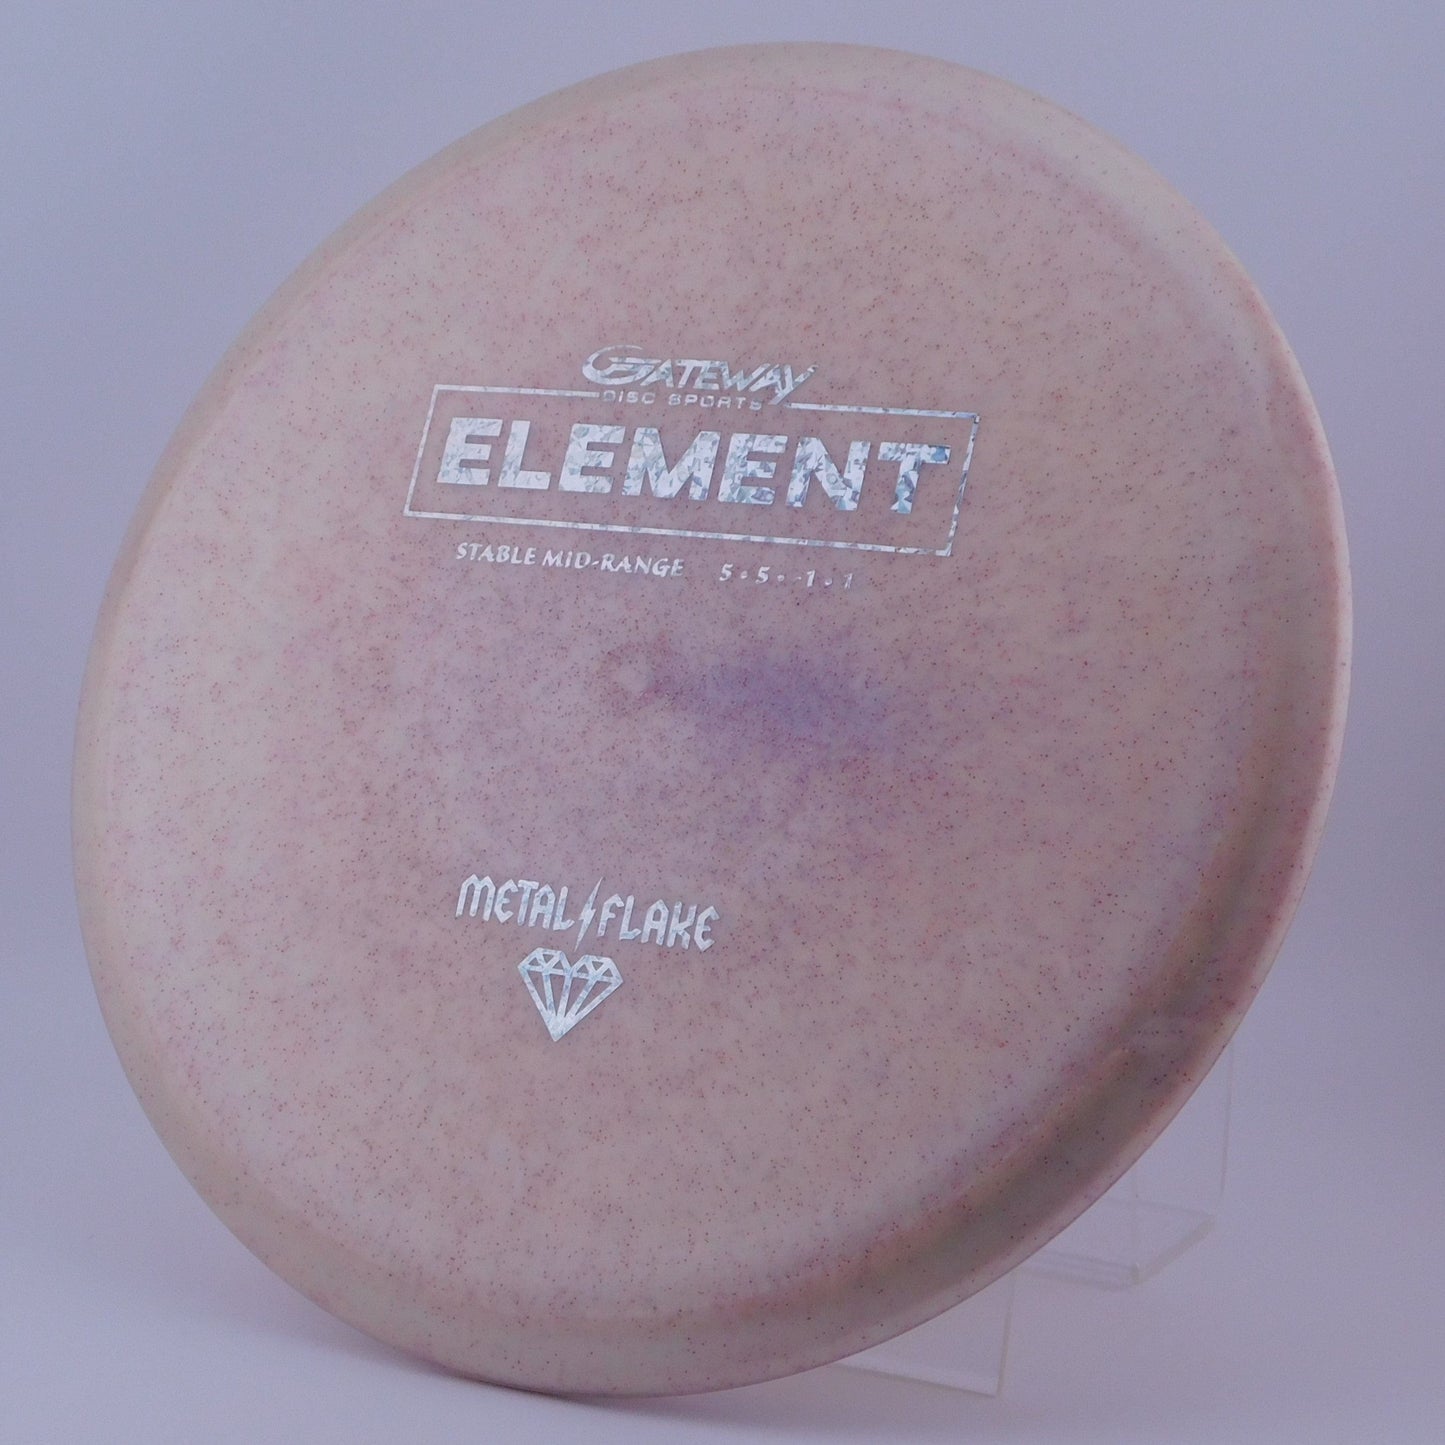 Gateway Element - Diamond Metal Flake 5│5│-1│1 180.2g - White+Pink - Gateway Element - Diamond Metal Flake - 100242